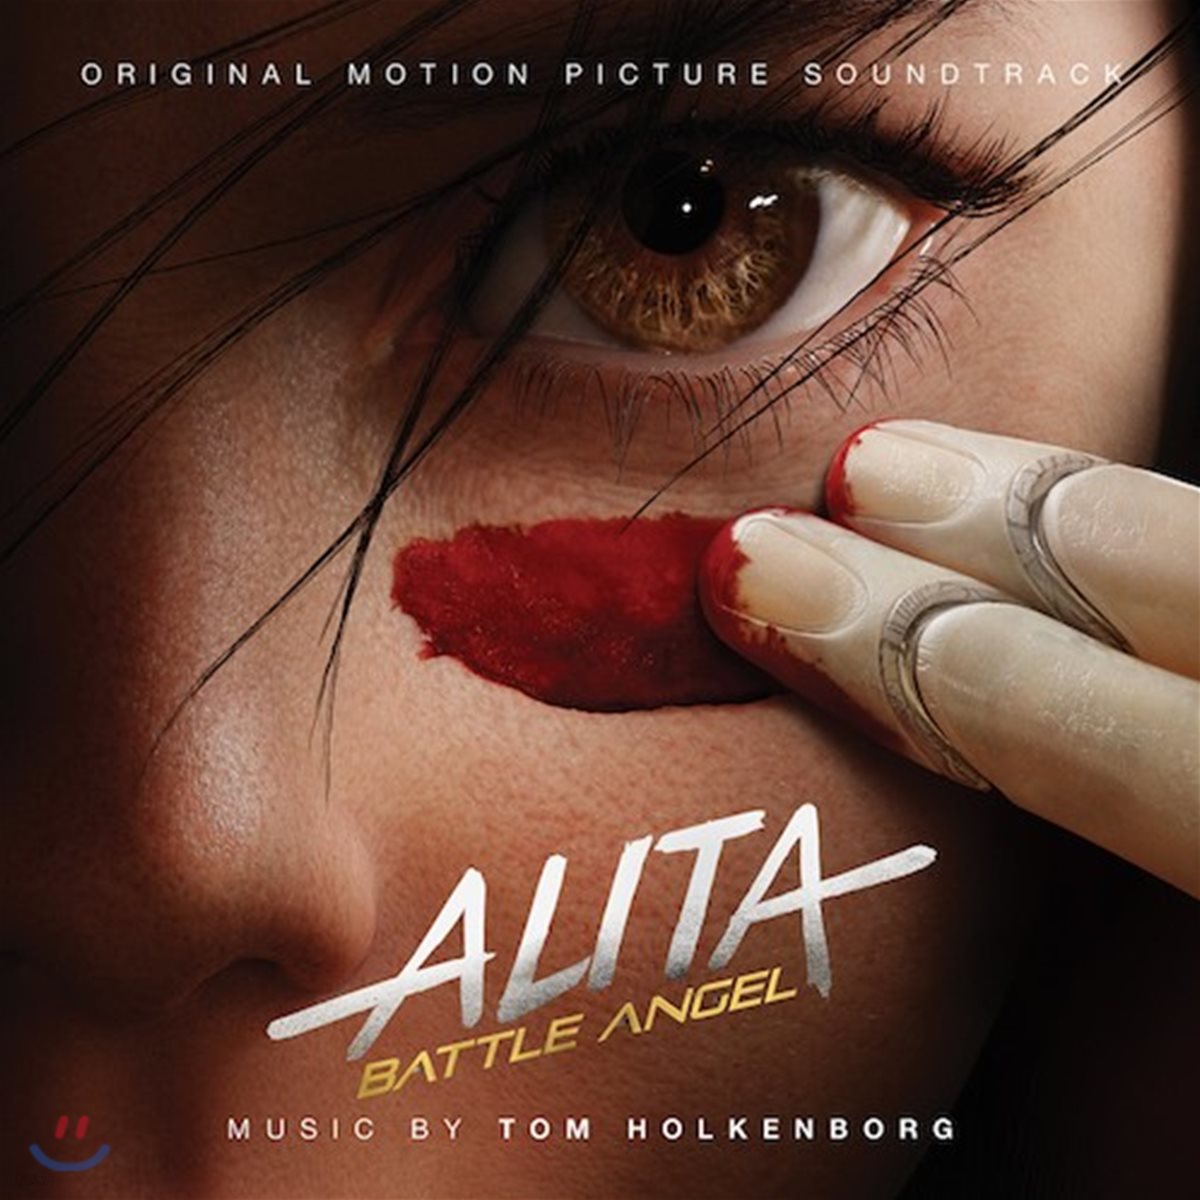 알리타: 배틀 엔젤 영화음악 (Alita: Battle Angel OST BY Junkie XL)